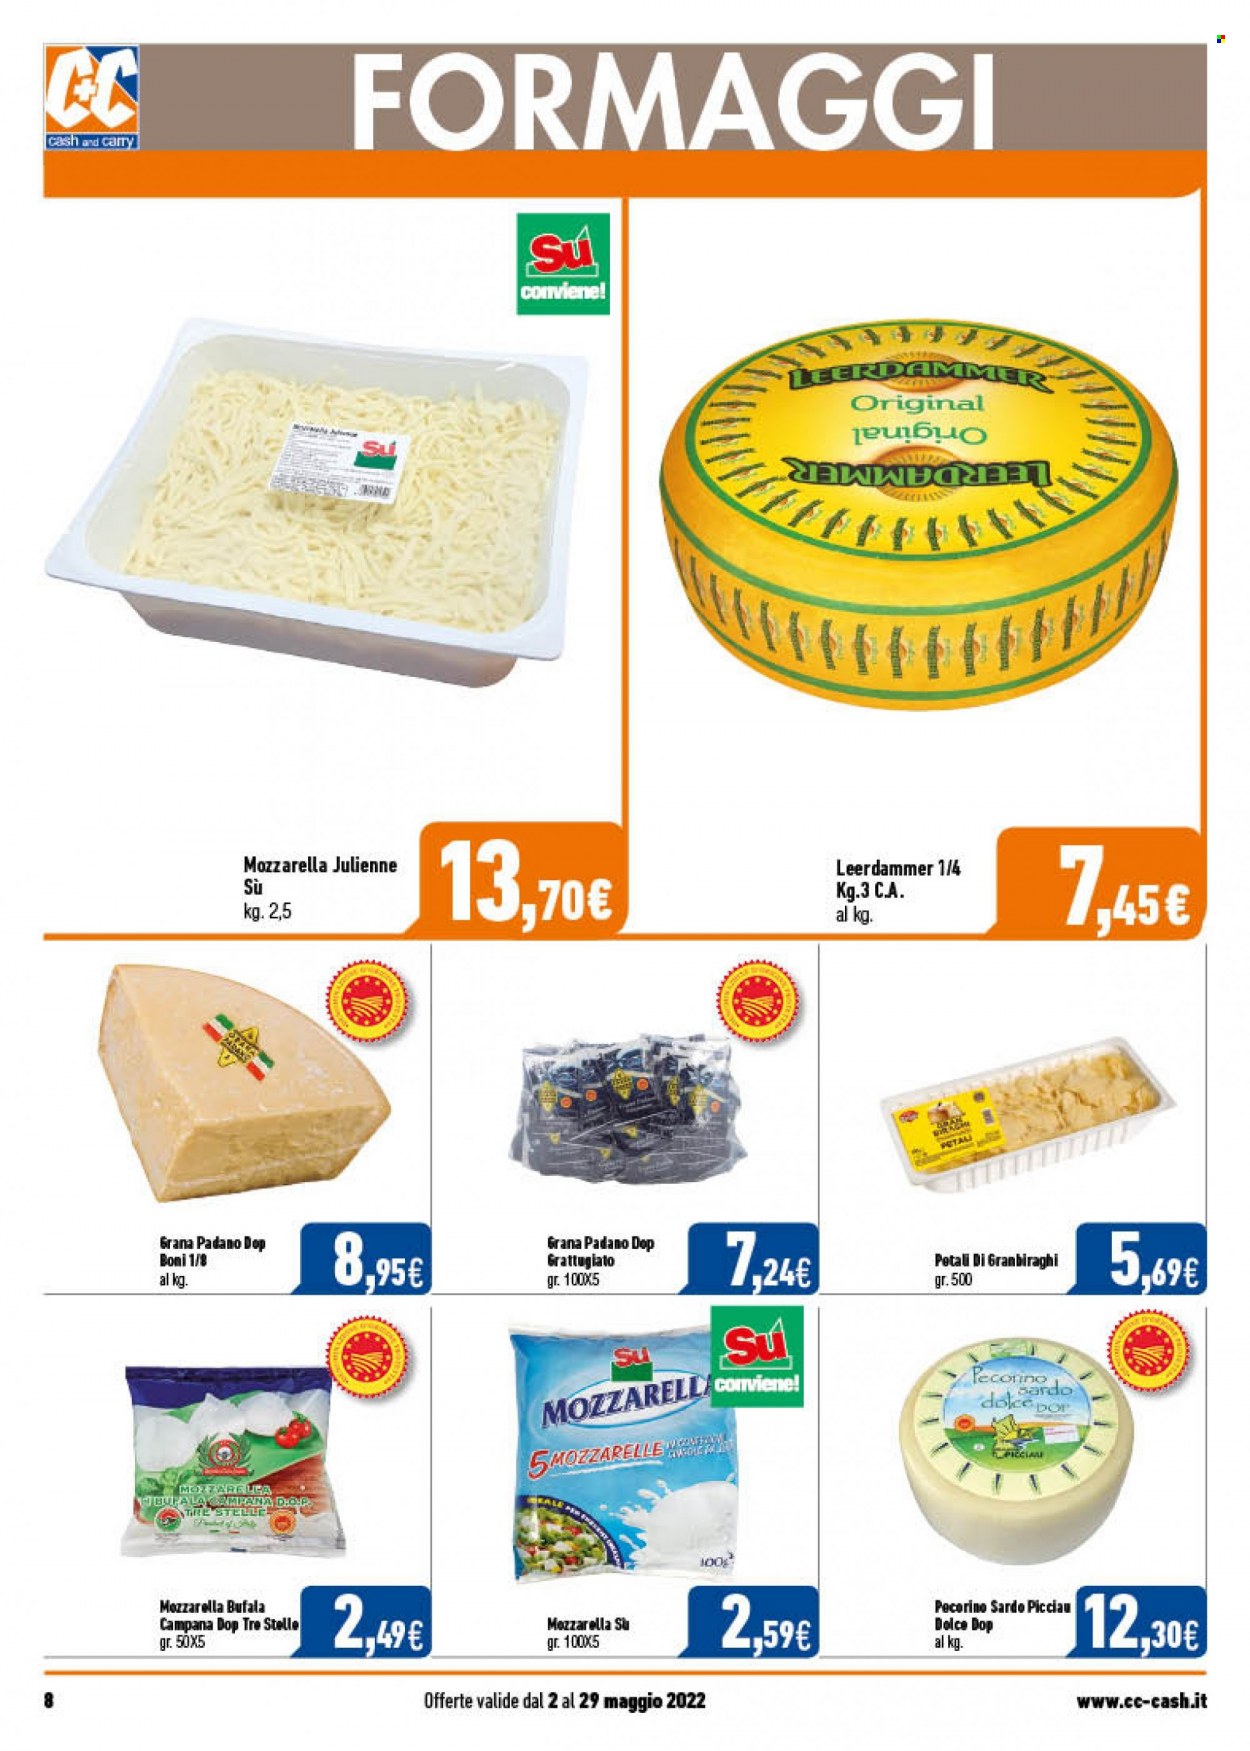 thumbnail - Volantino C+C Cash & Carry - 2/5/2022 - 29/5/2022 - Prodotti in offerta - formaggio, Leerdammer, mozzarella, pecorino, Grana Padano, Pecorino Sardo, mozzarella di bufala. Pagina 8.